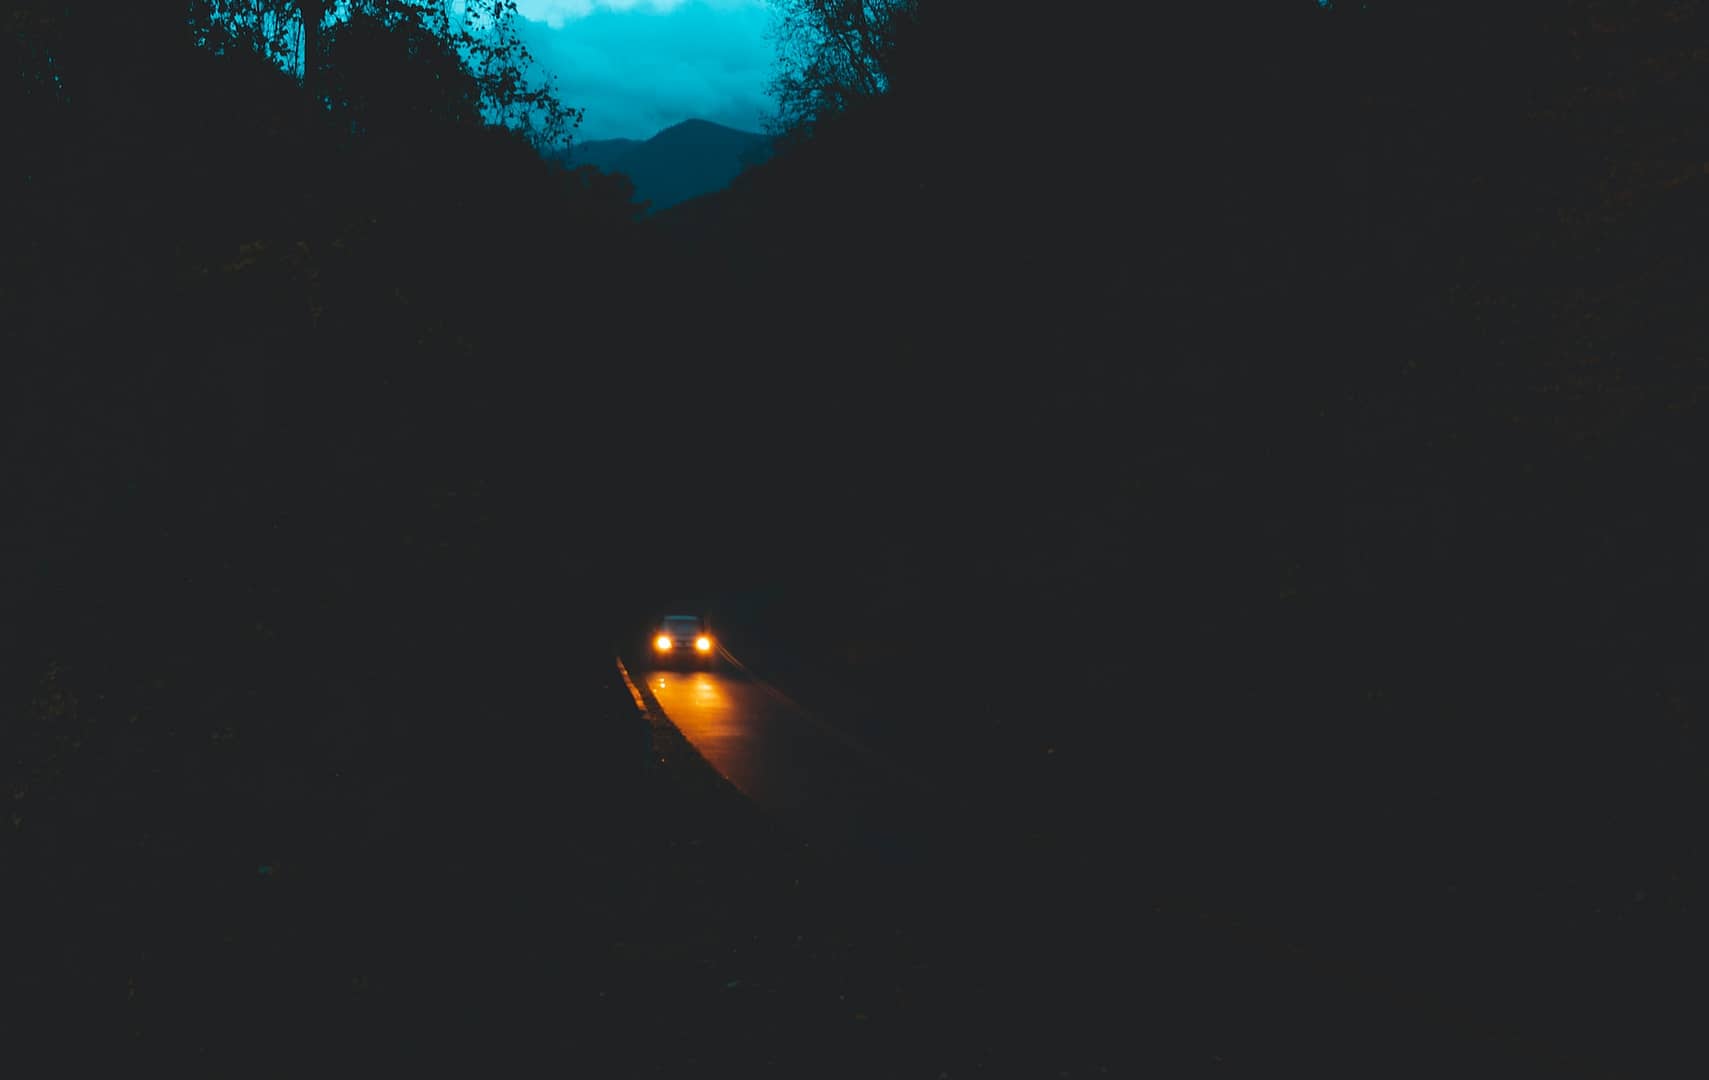 A car on a dark road